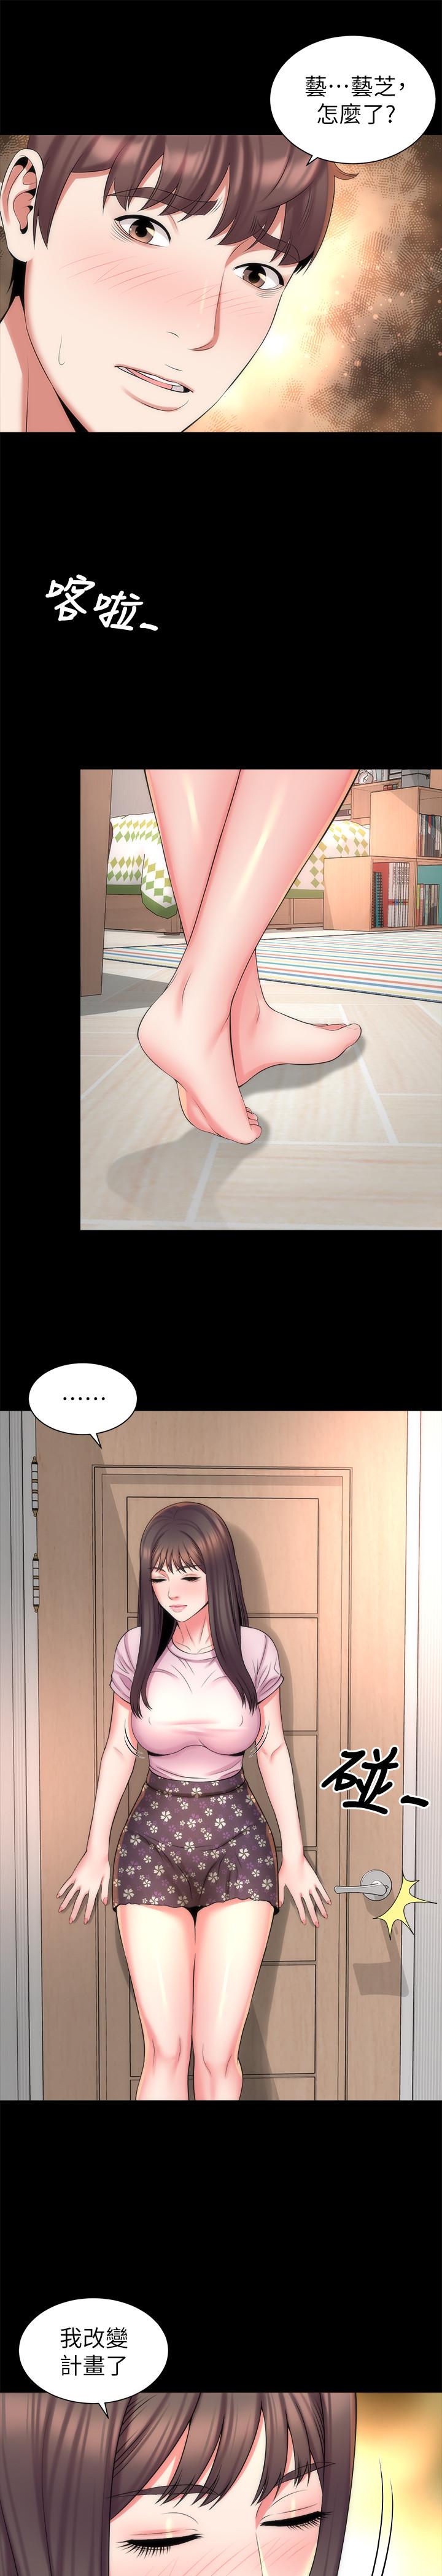 隔壁母女漫画 免费阅读 第39话-妍秀的大胆战袍 19.jpg